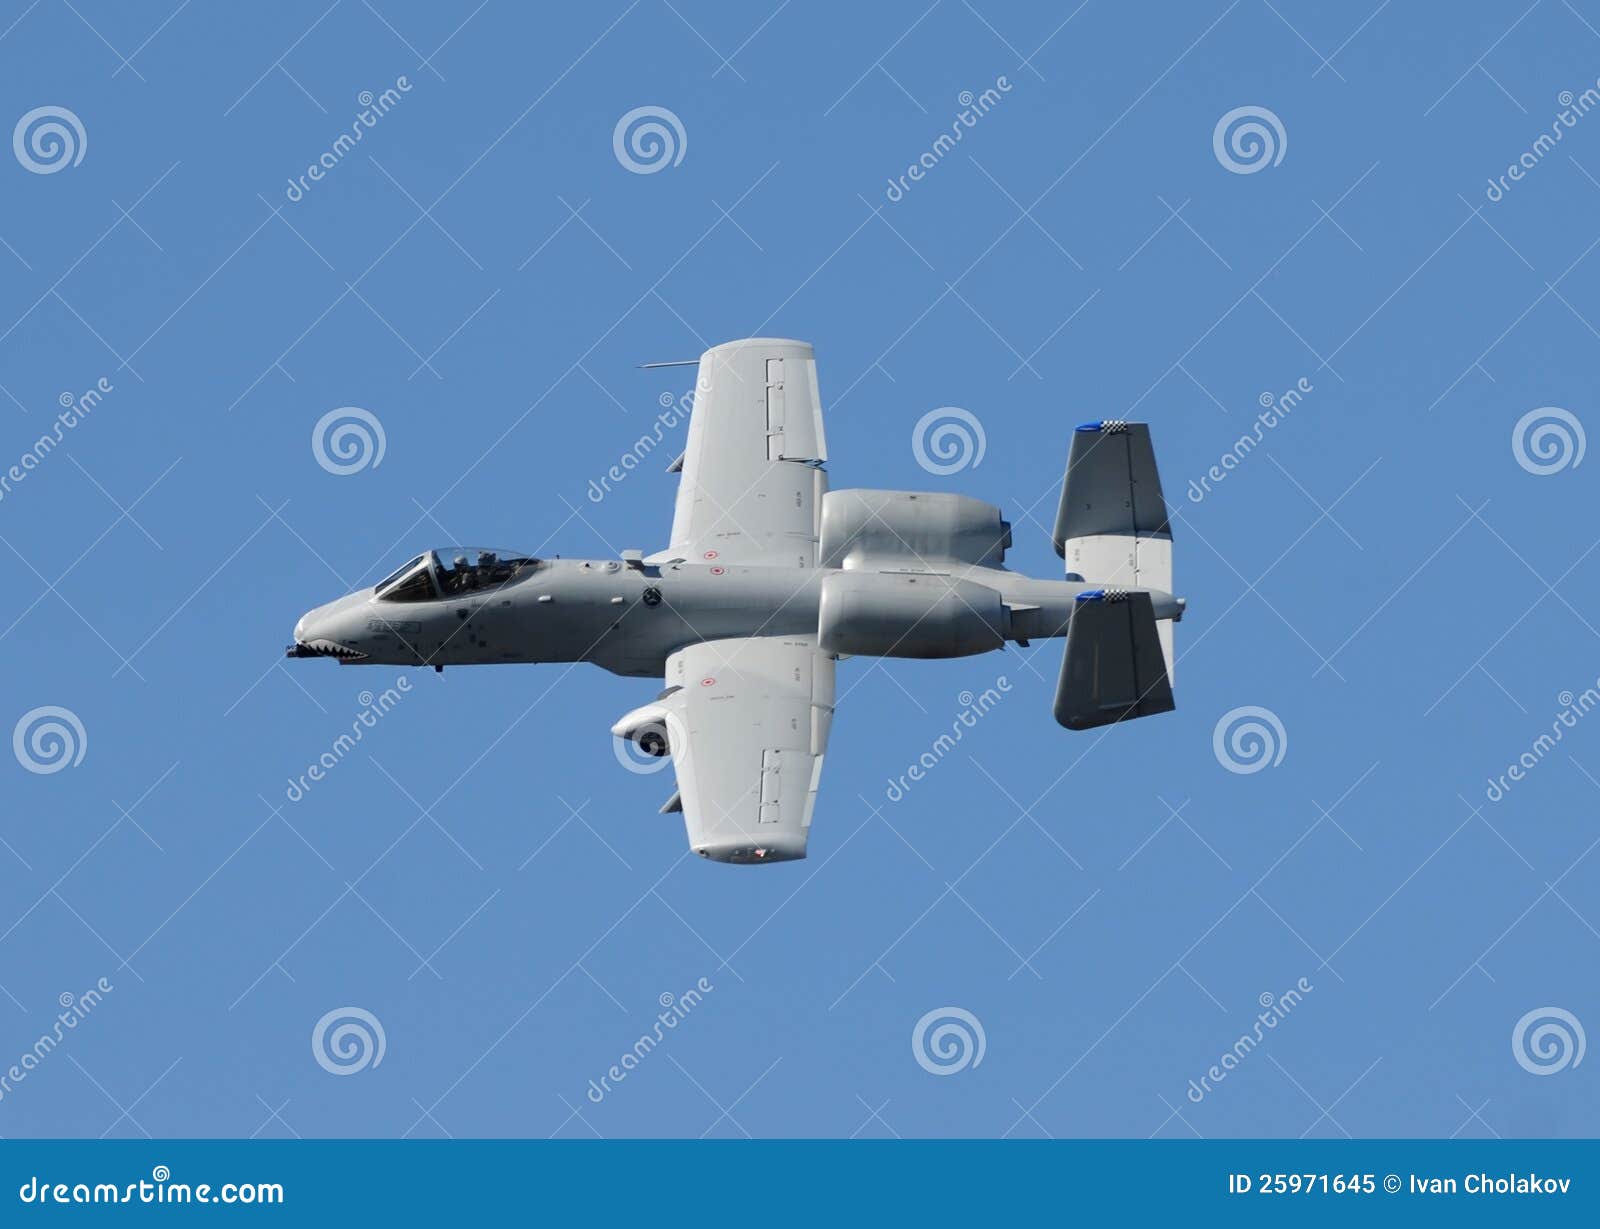 Modern gunship fighter jet against blue sky